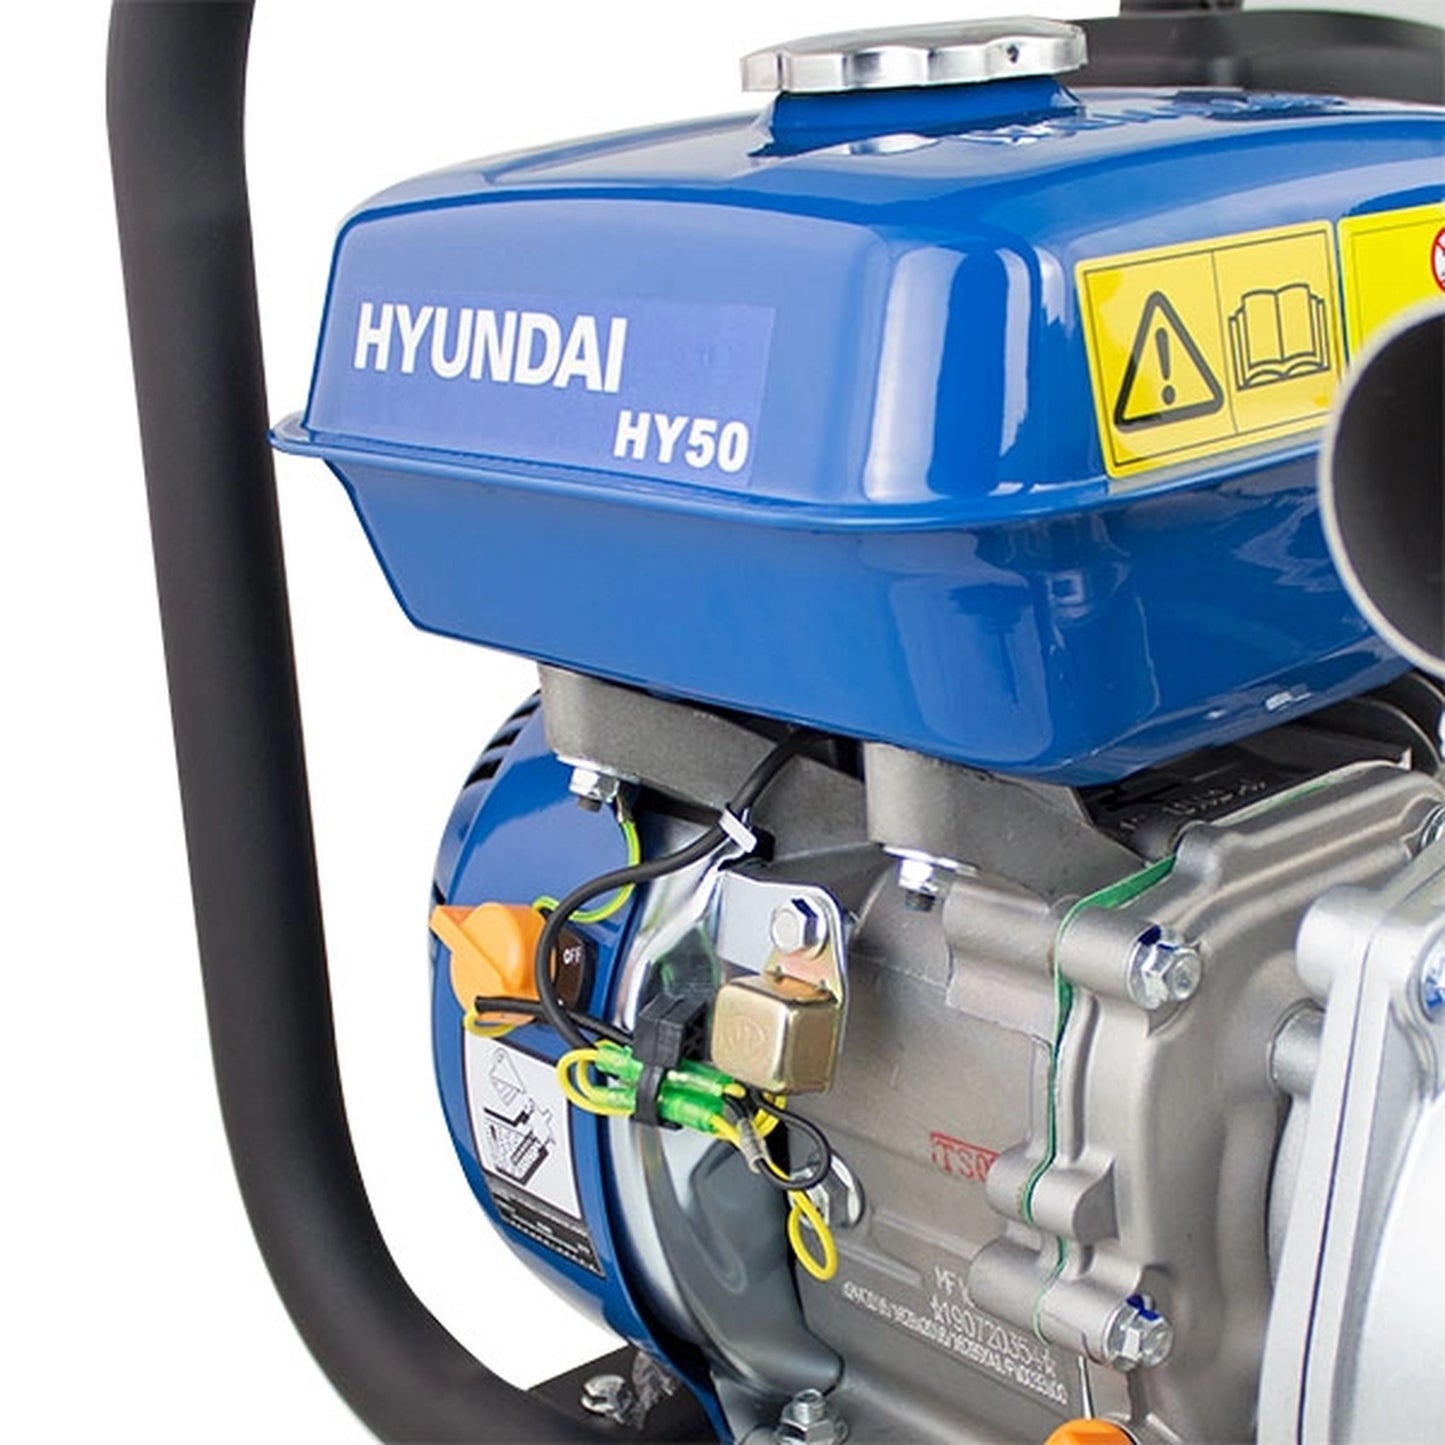 Hyundai HY50 Professional Petrol Water Pump 163cc 5.5hp